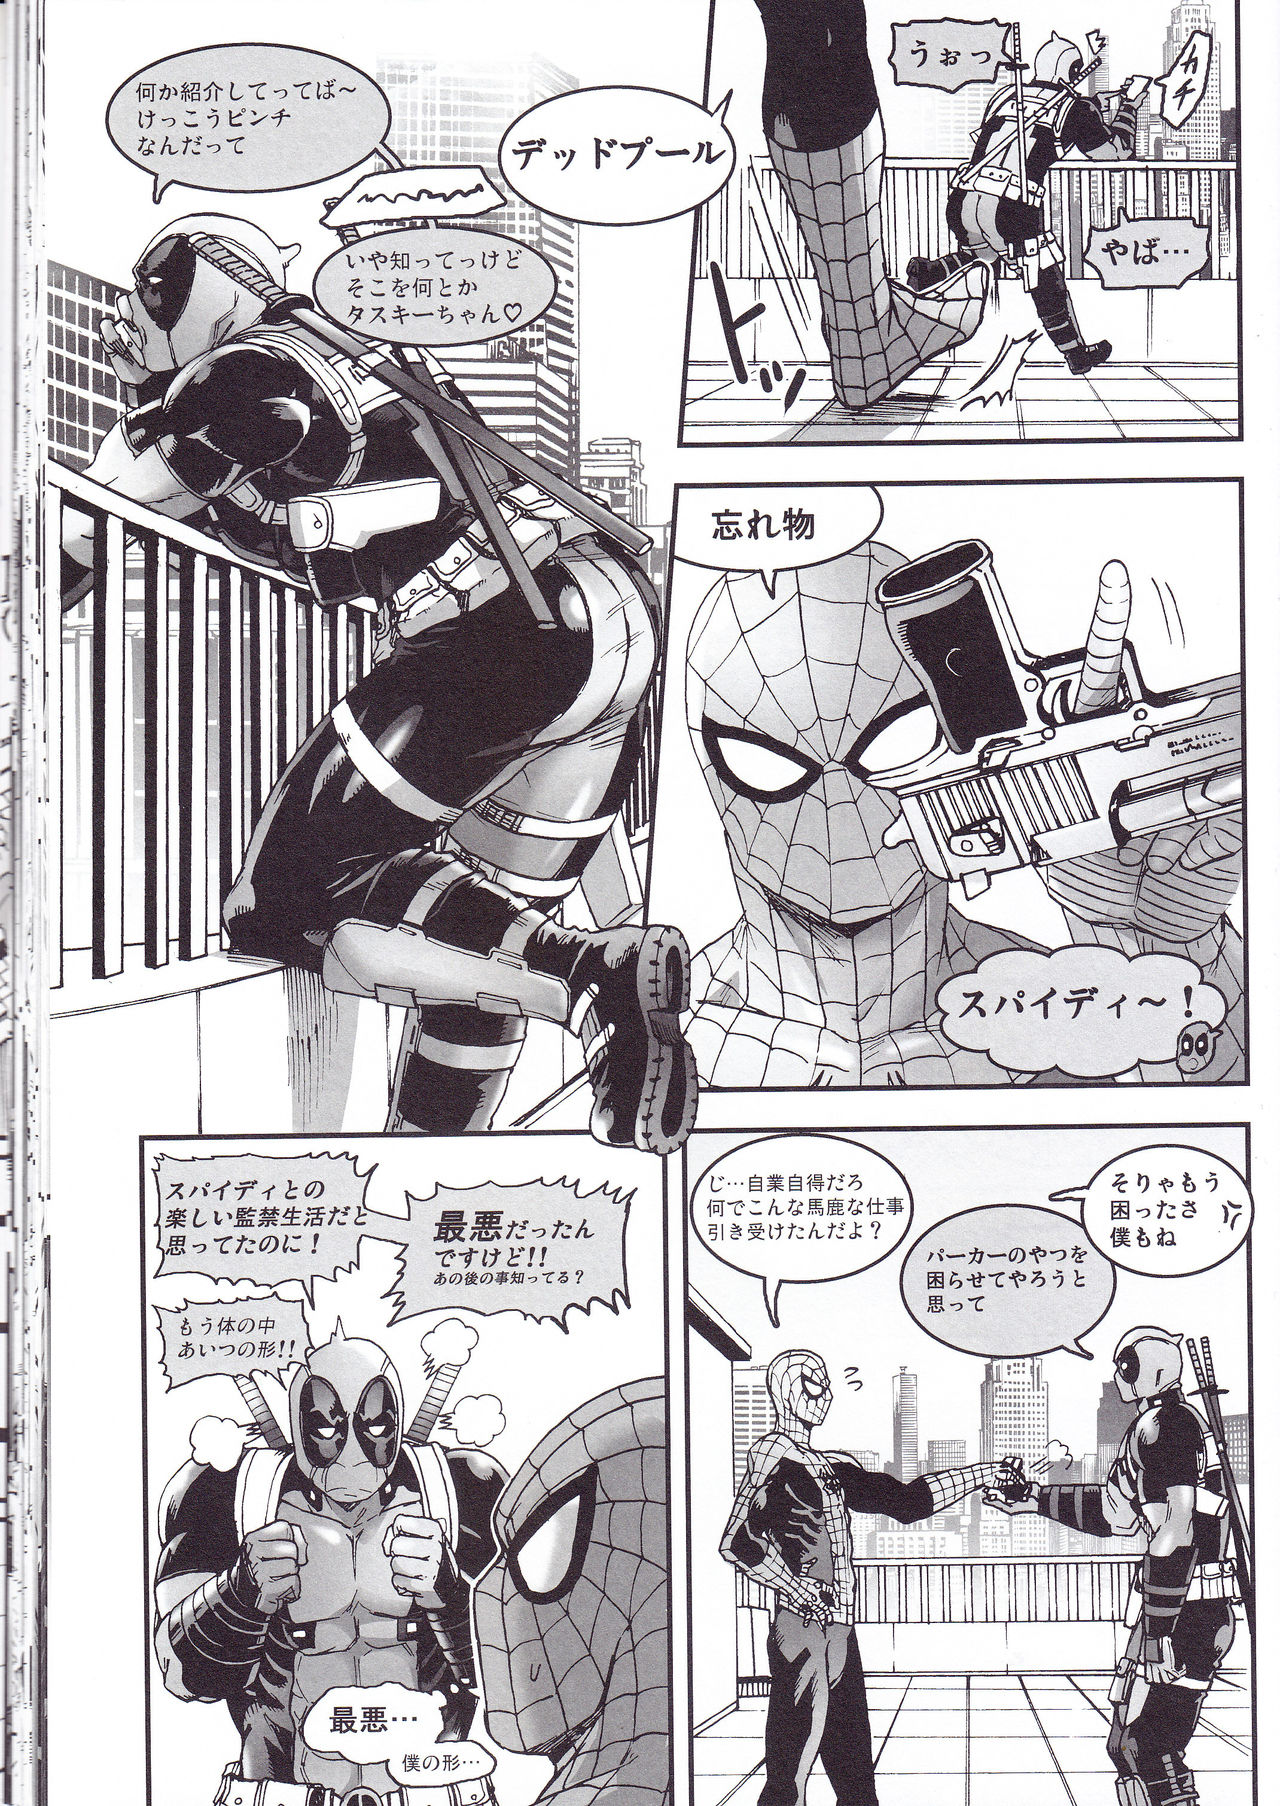 (SUPER26) [ぼやり。 (と)] THREE DAYS 2-3 (Spider-man、Deadpool)